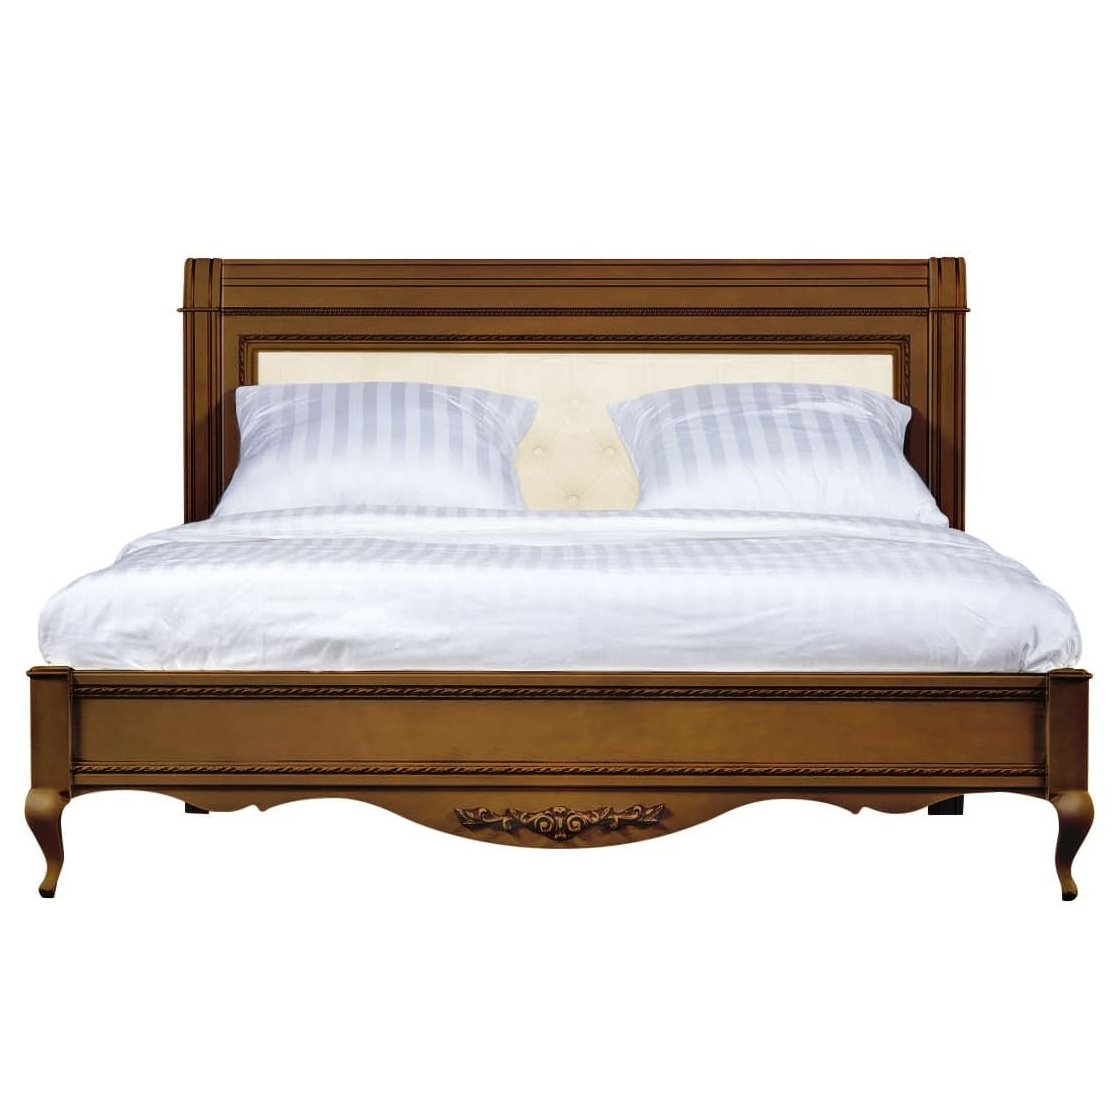 Кровать Timber Неаполь, двуспальная с мягким изголовьем 160x200 см цвет: орех (T-520)T-520